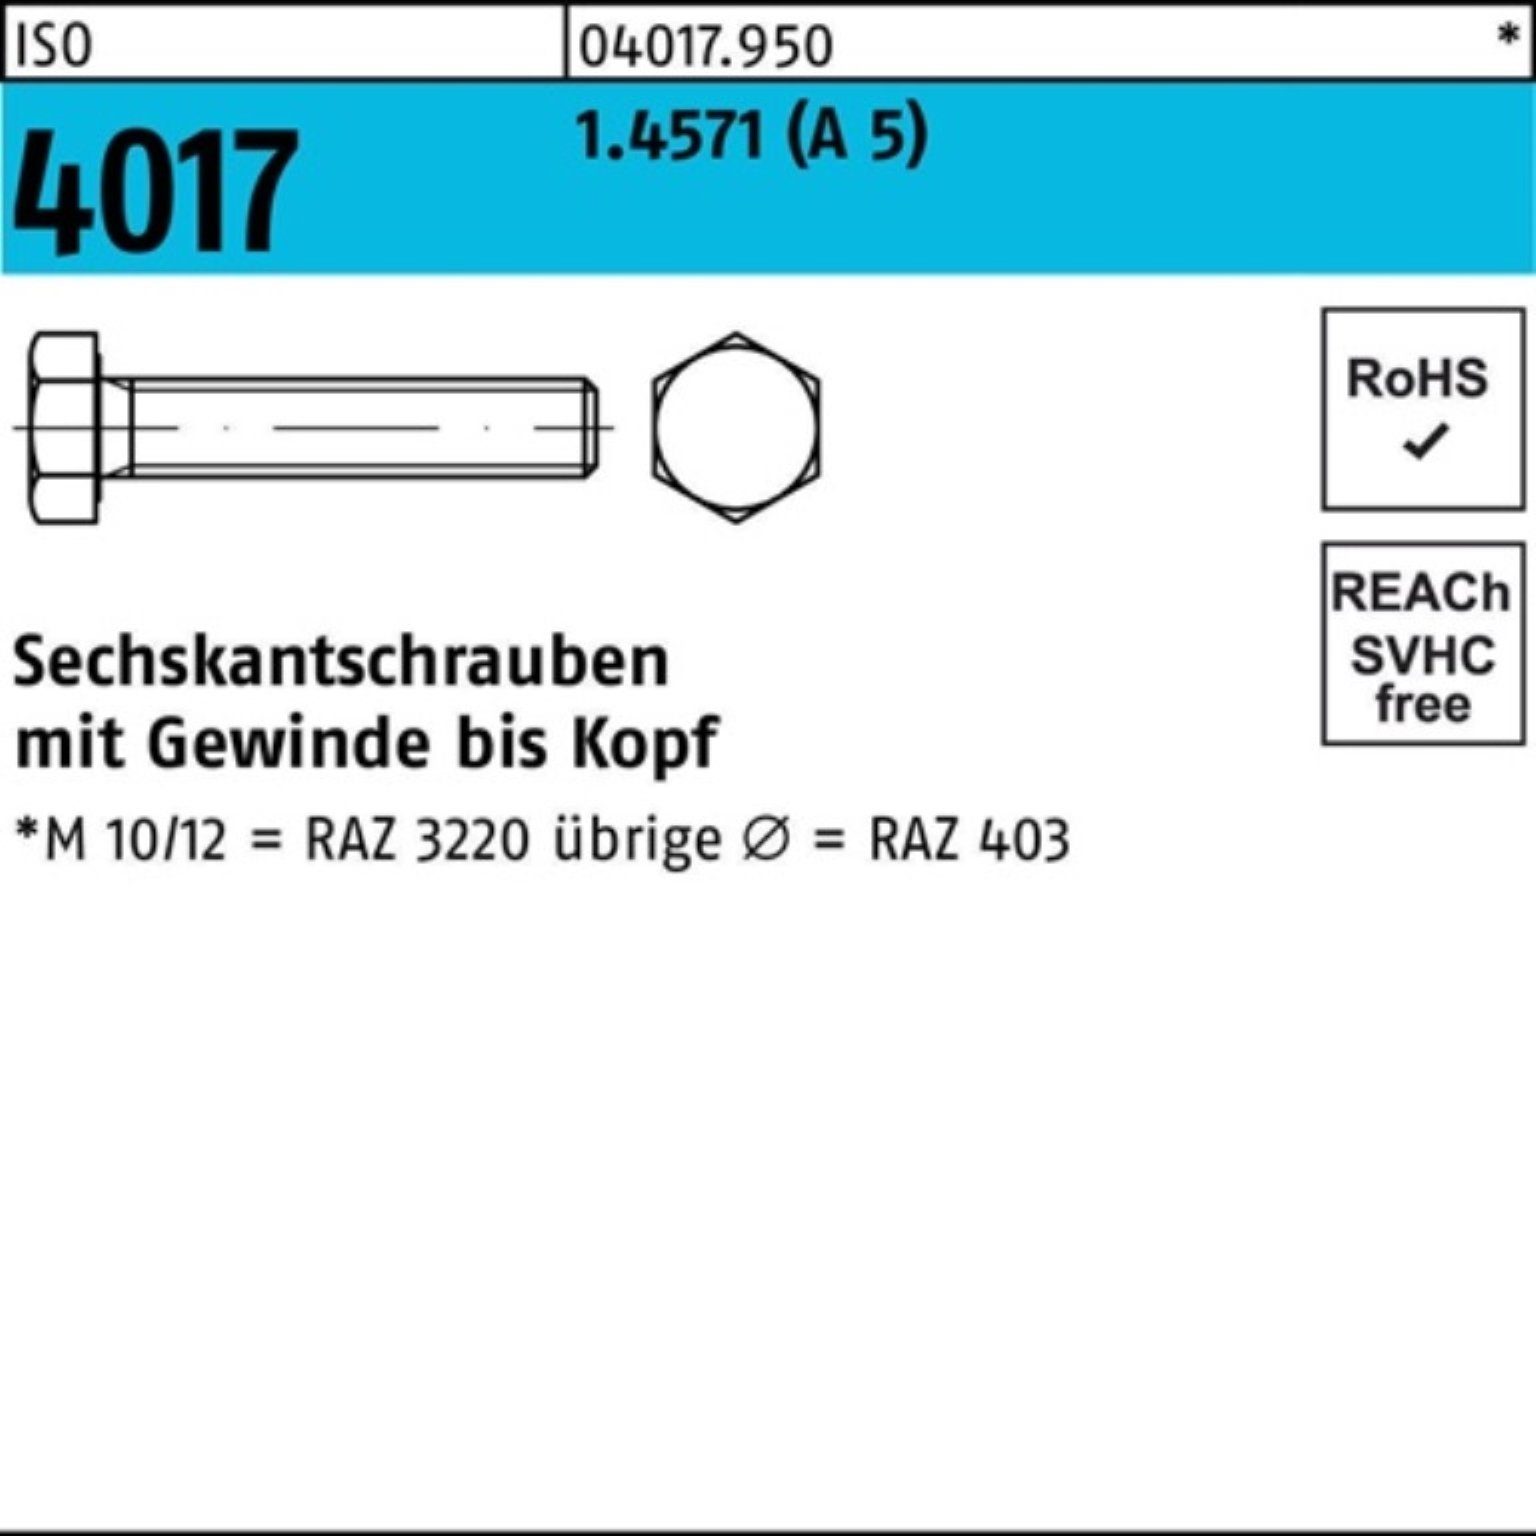 Bufab Sechskantschraube 100er 5 Pack 4017 Stück M10x 20 4017 1 VG A ISO ISO Sechskantschraube